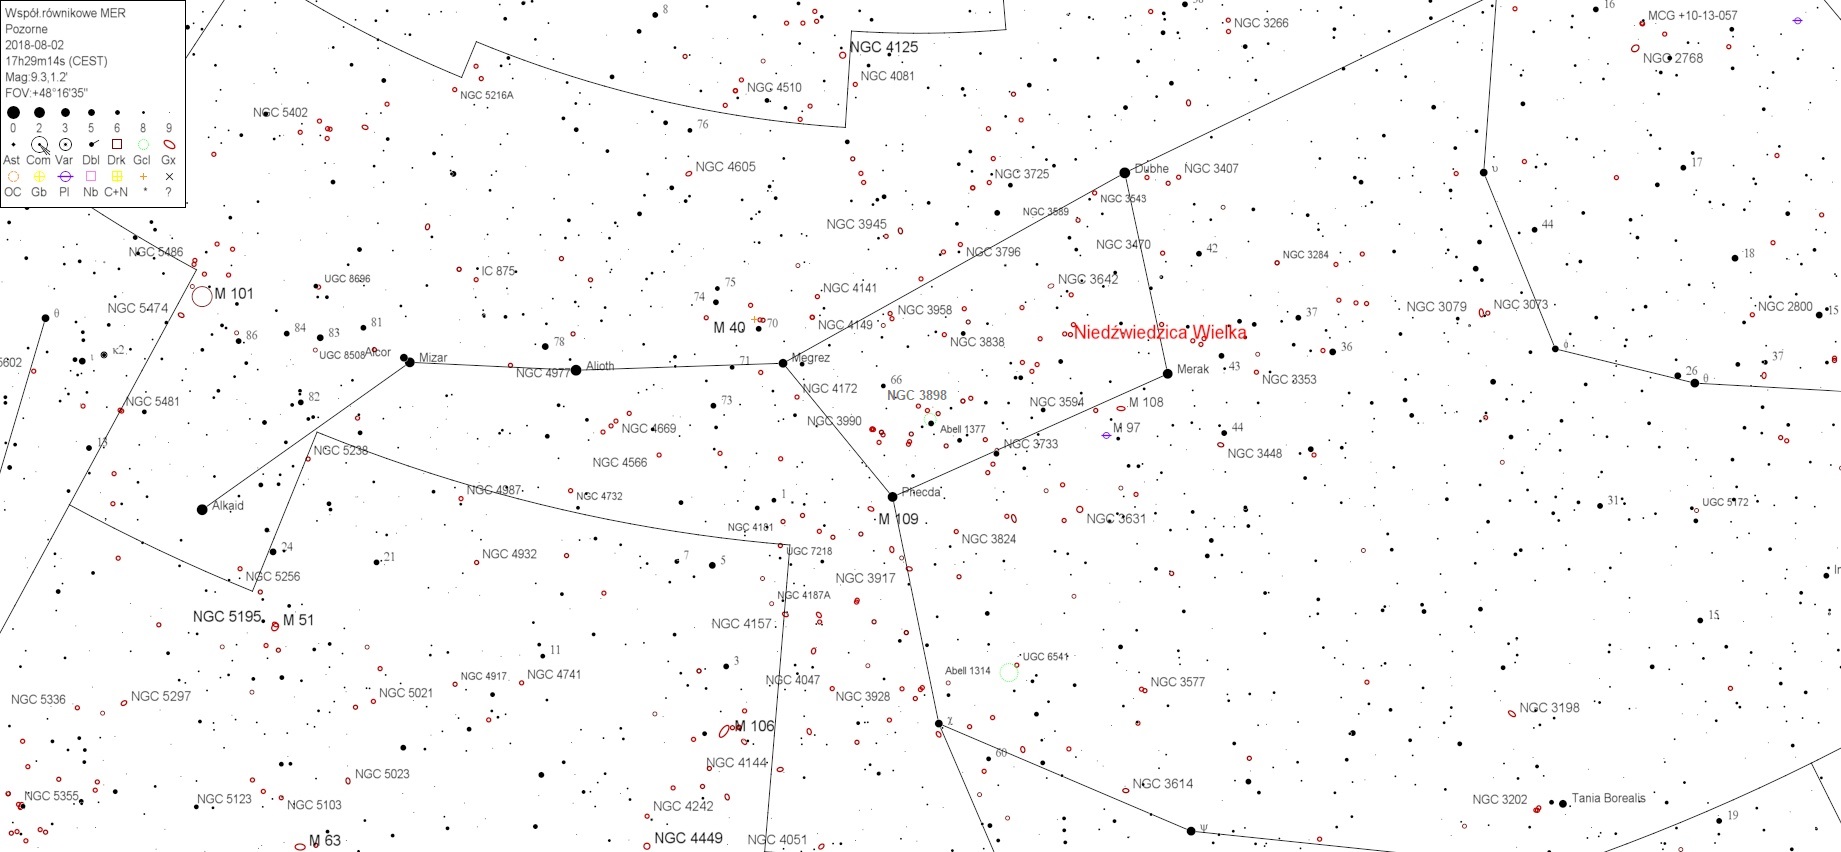 NGC3898v4.jpg